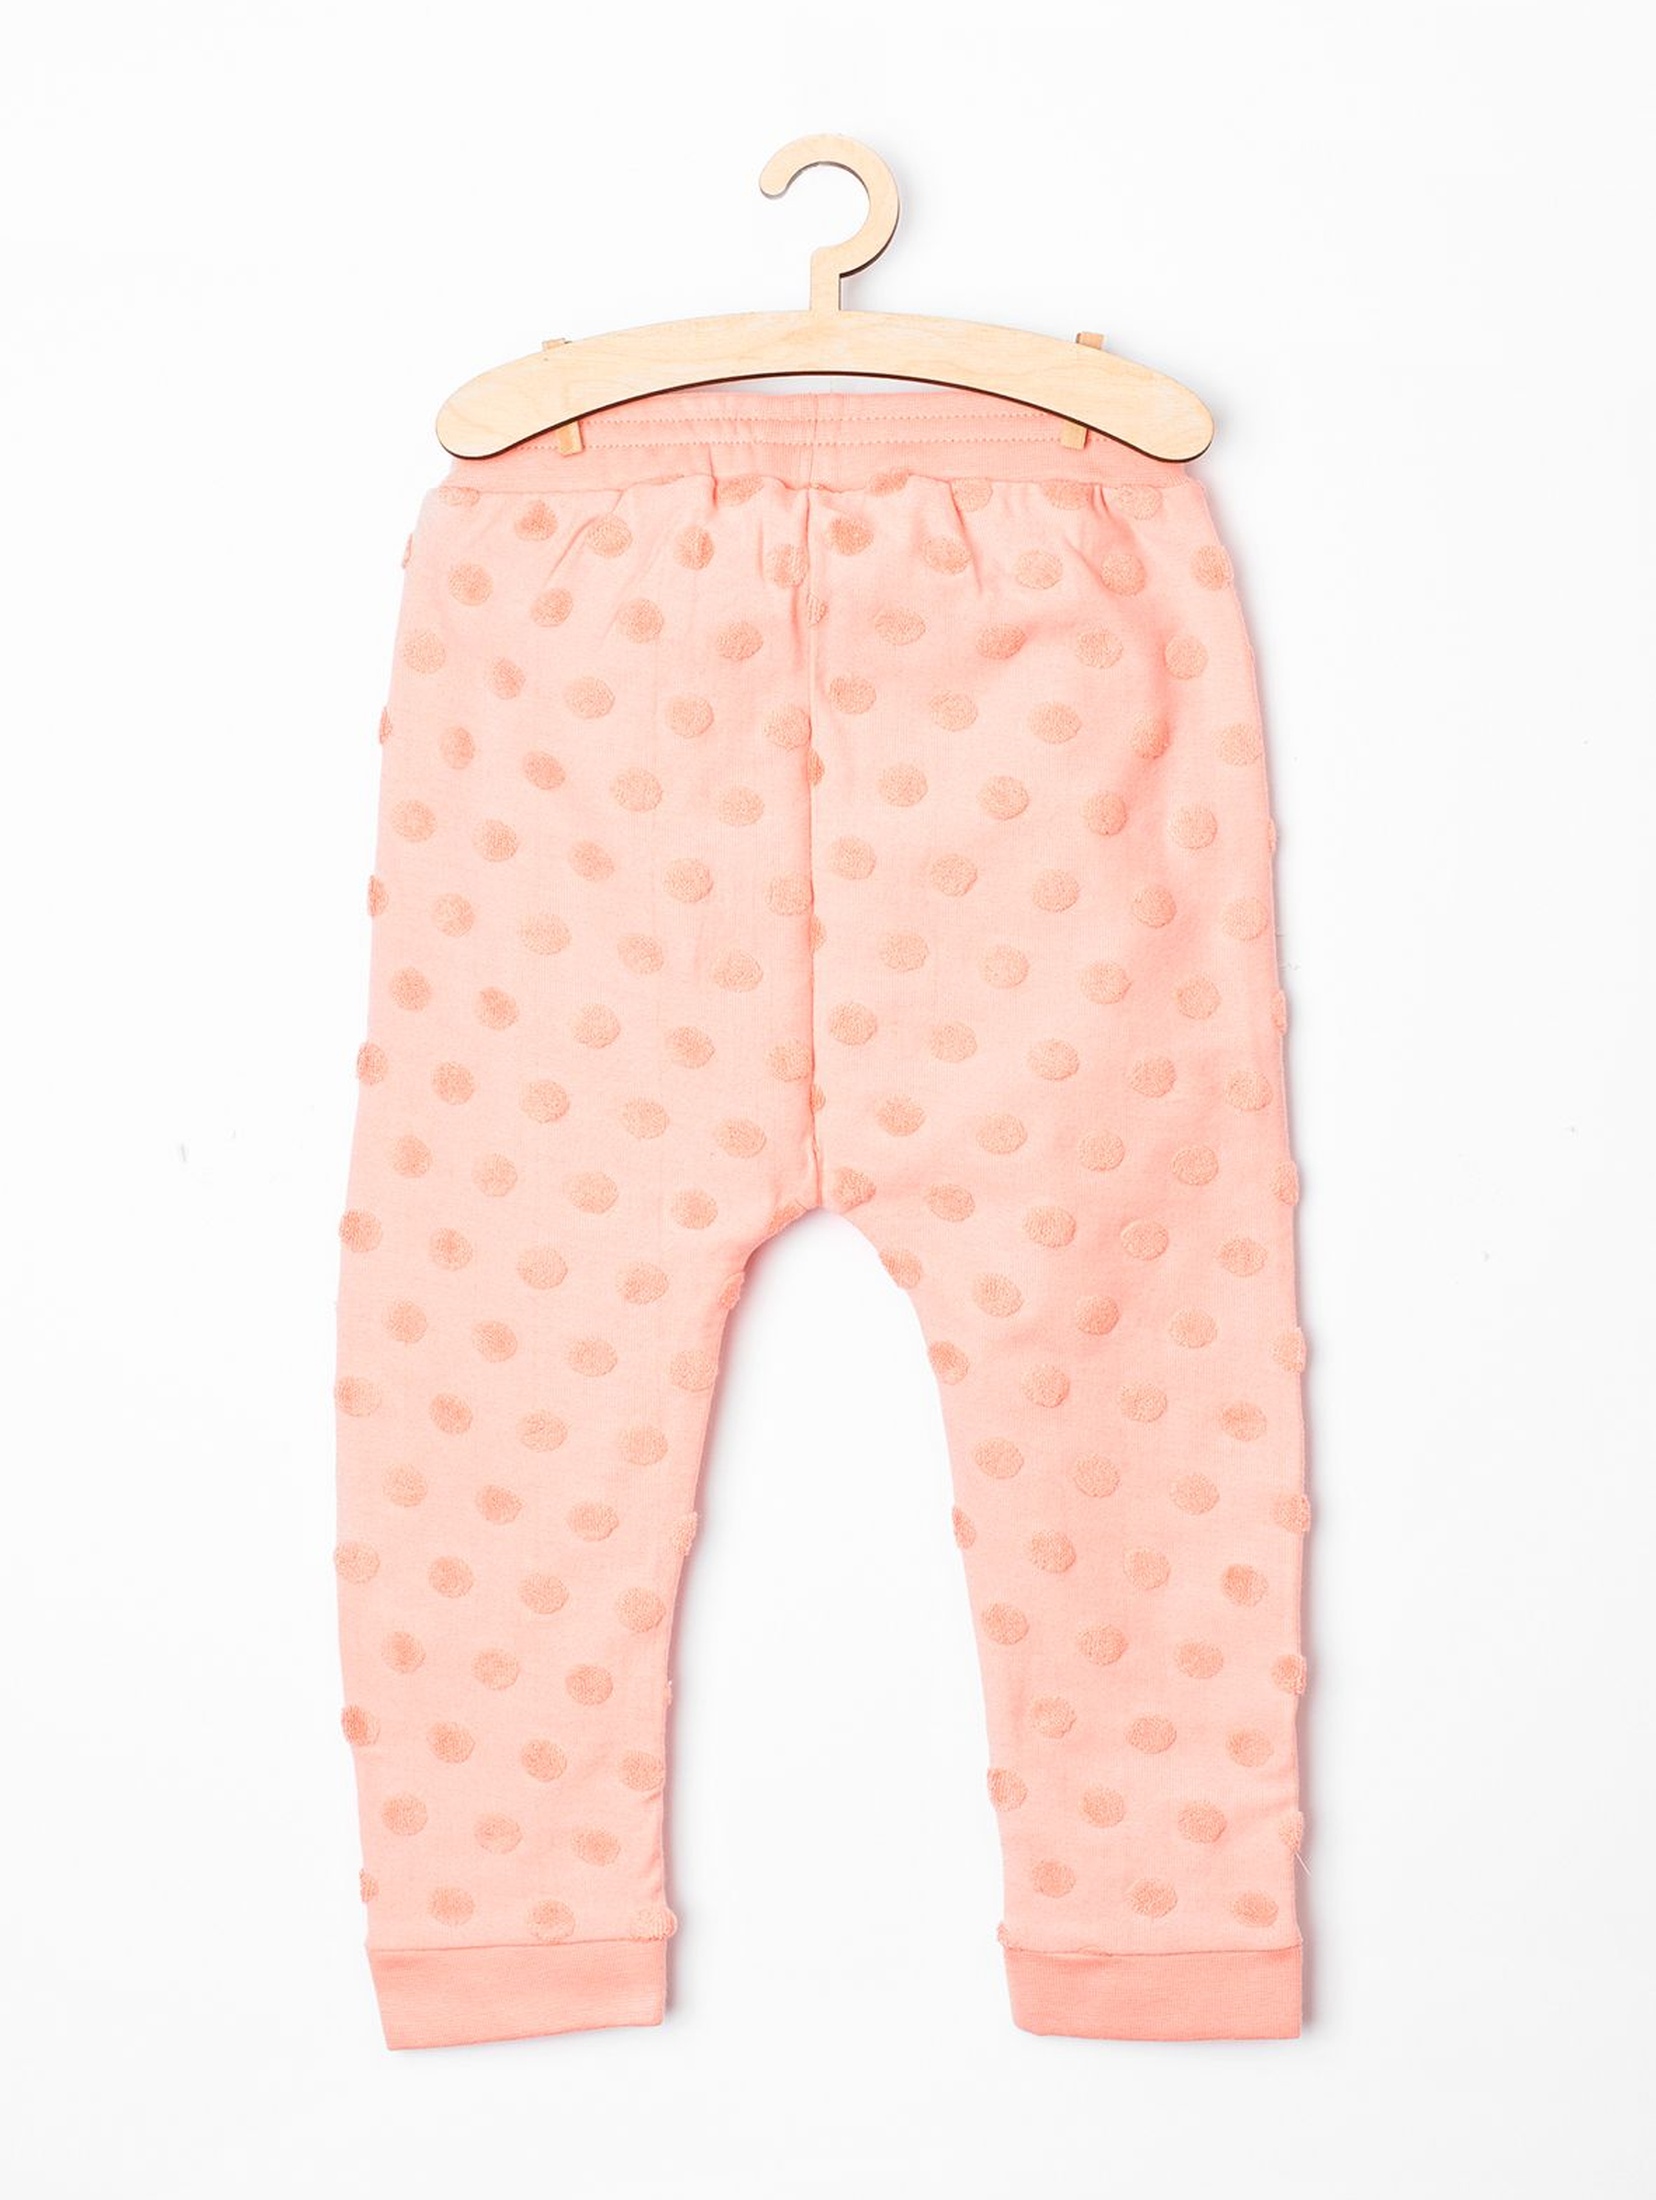 Spodnie dresowe dla niemowlaka-różowe z króliczkiem